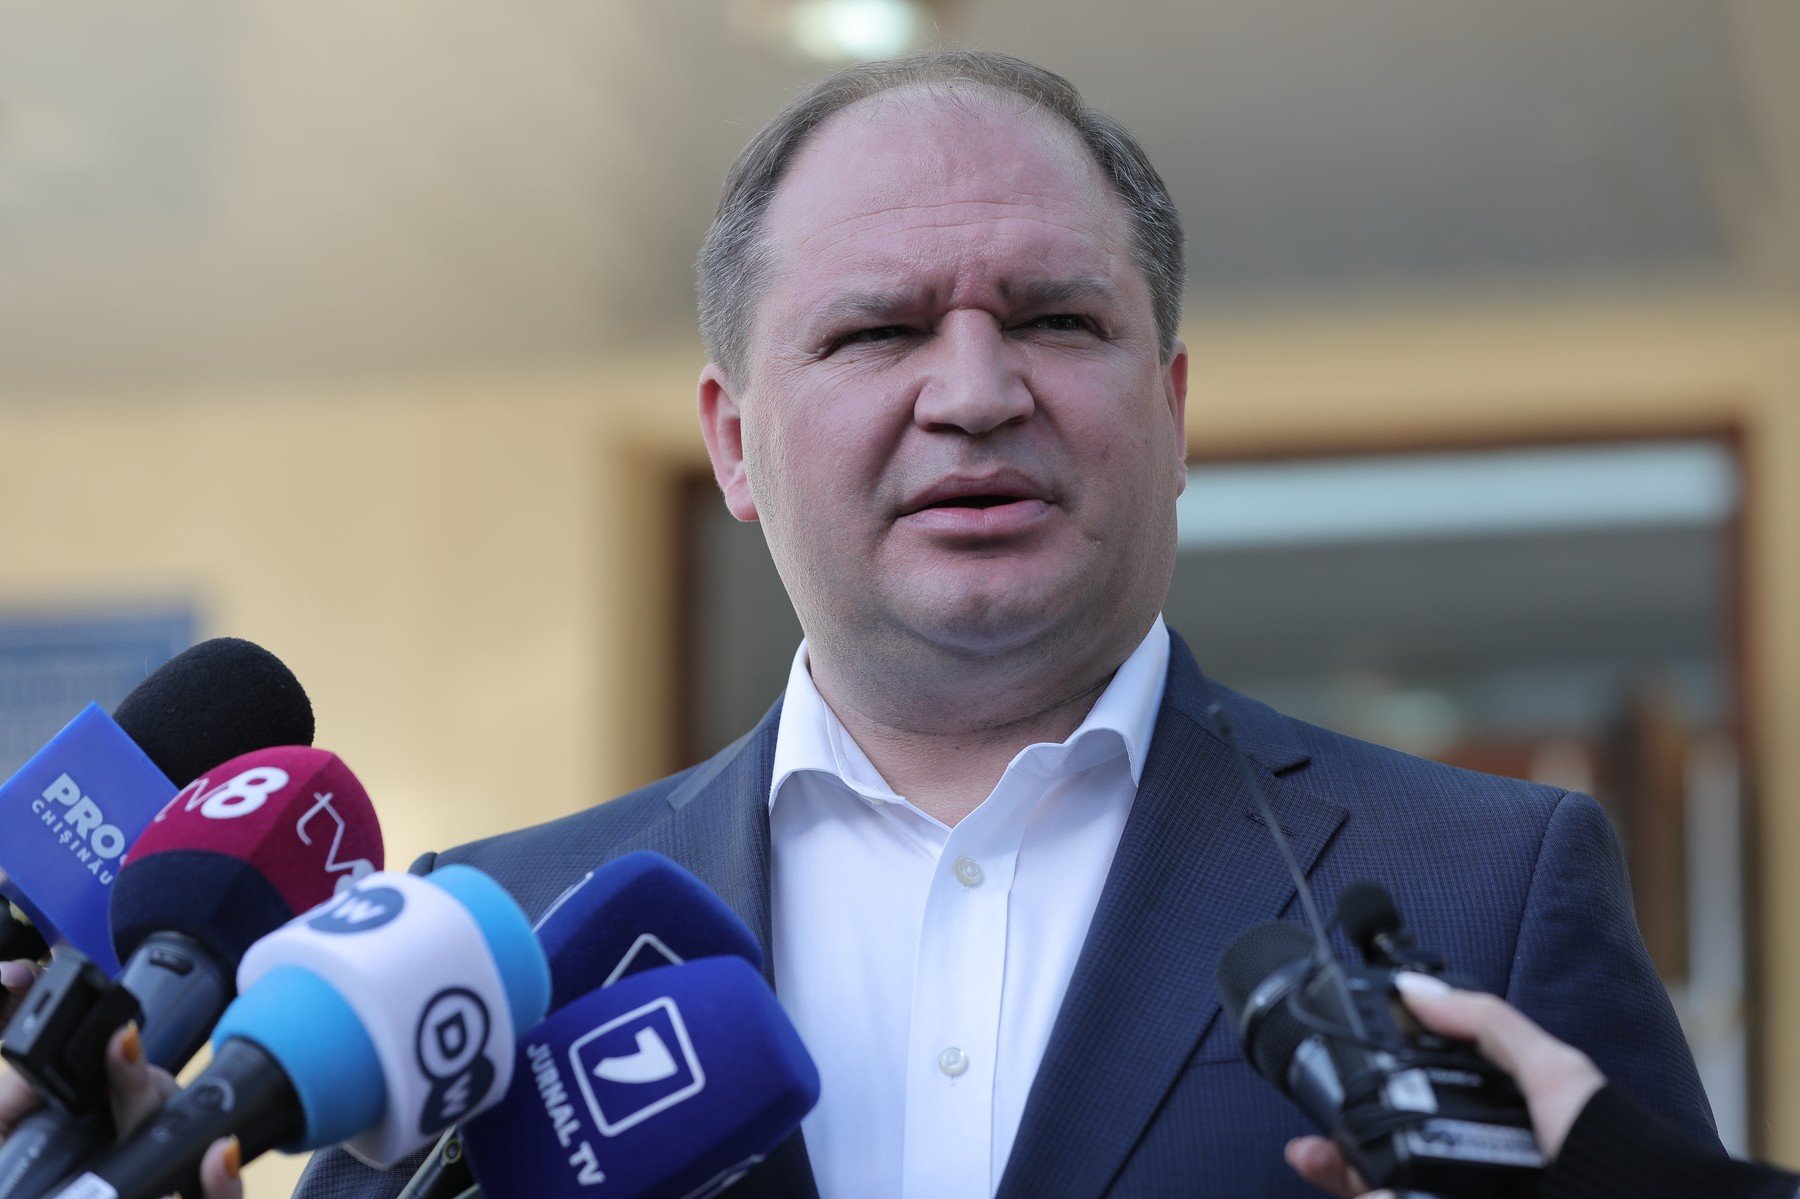  Ion Ceban, candidatul pro rus reales primar al Chişinăului: Au fost manipulări, trişări şi multe încercări de a frauda alegerile